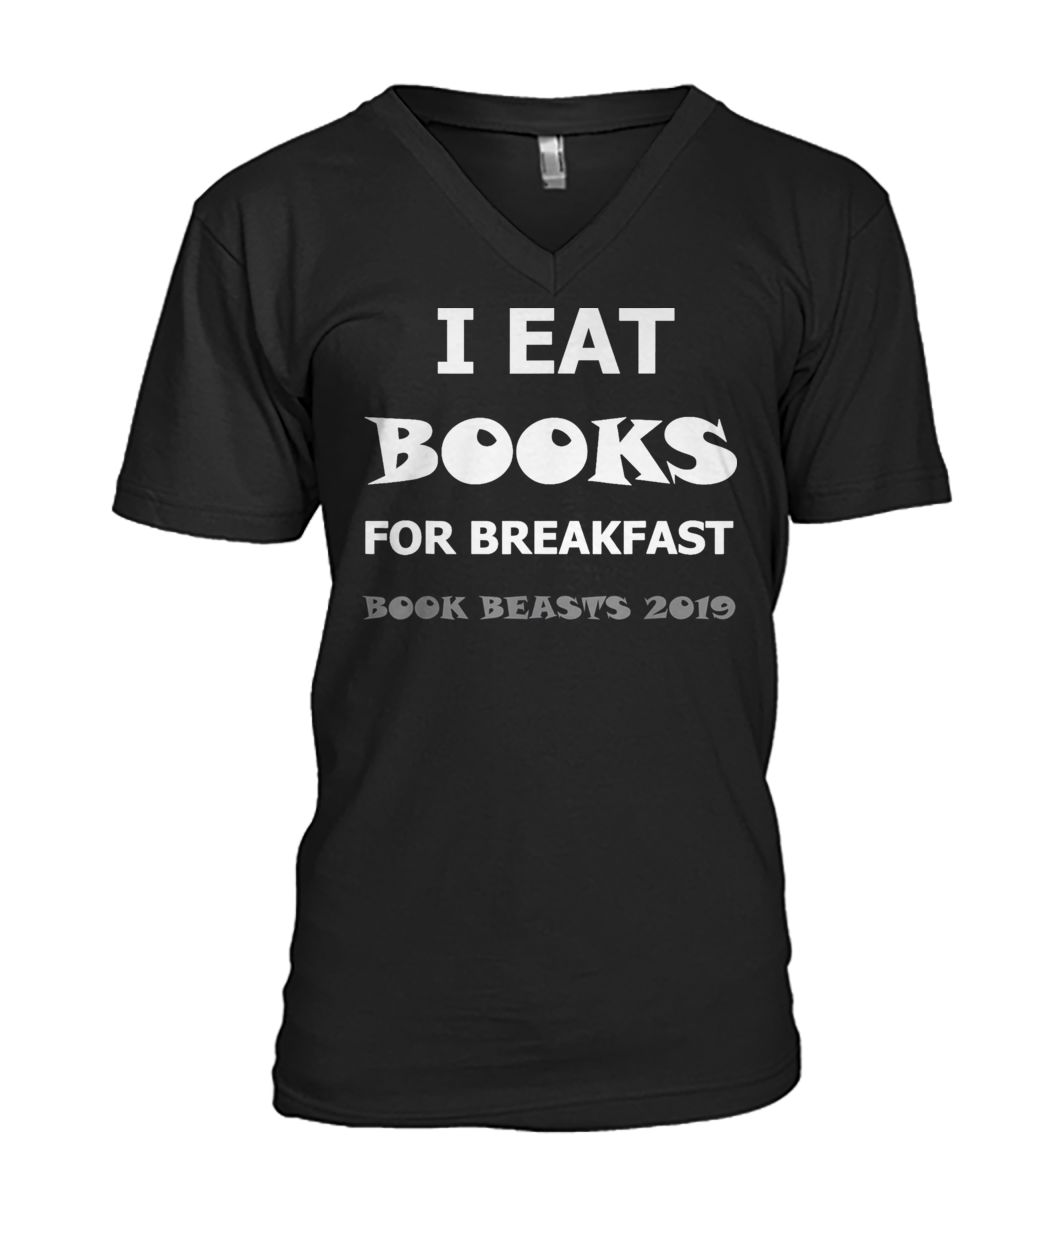 I eat books for breakfast book beasts 2019 mens v-neck